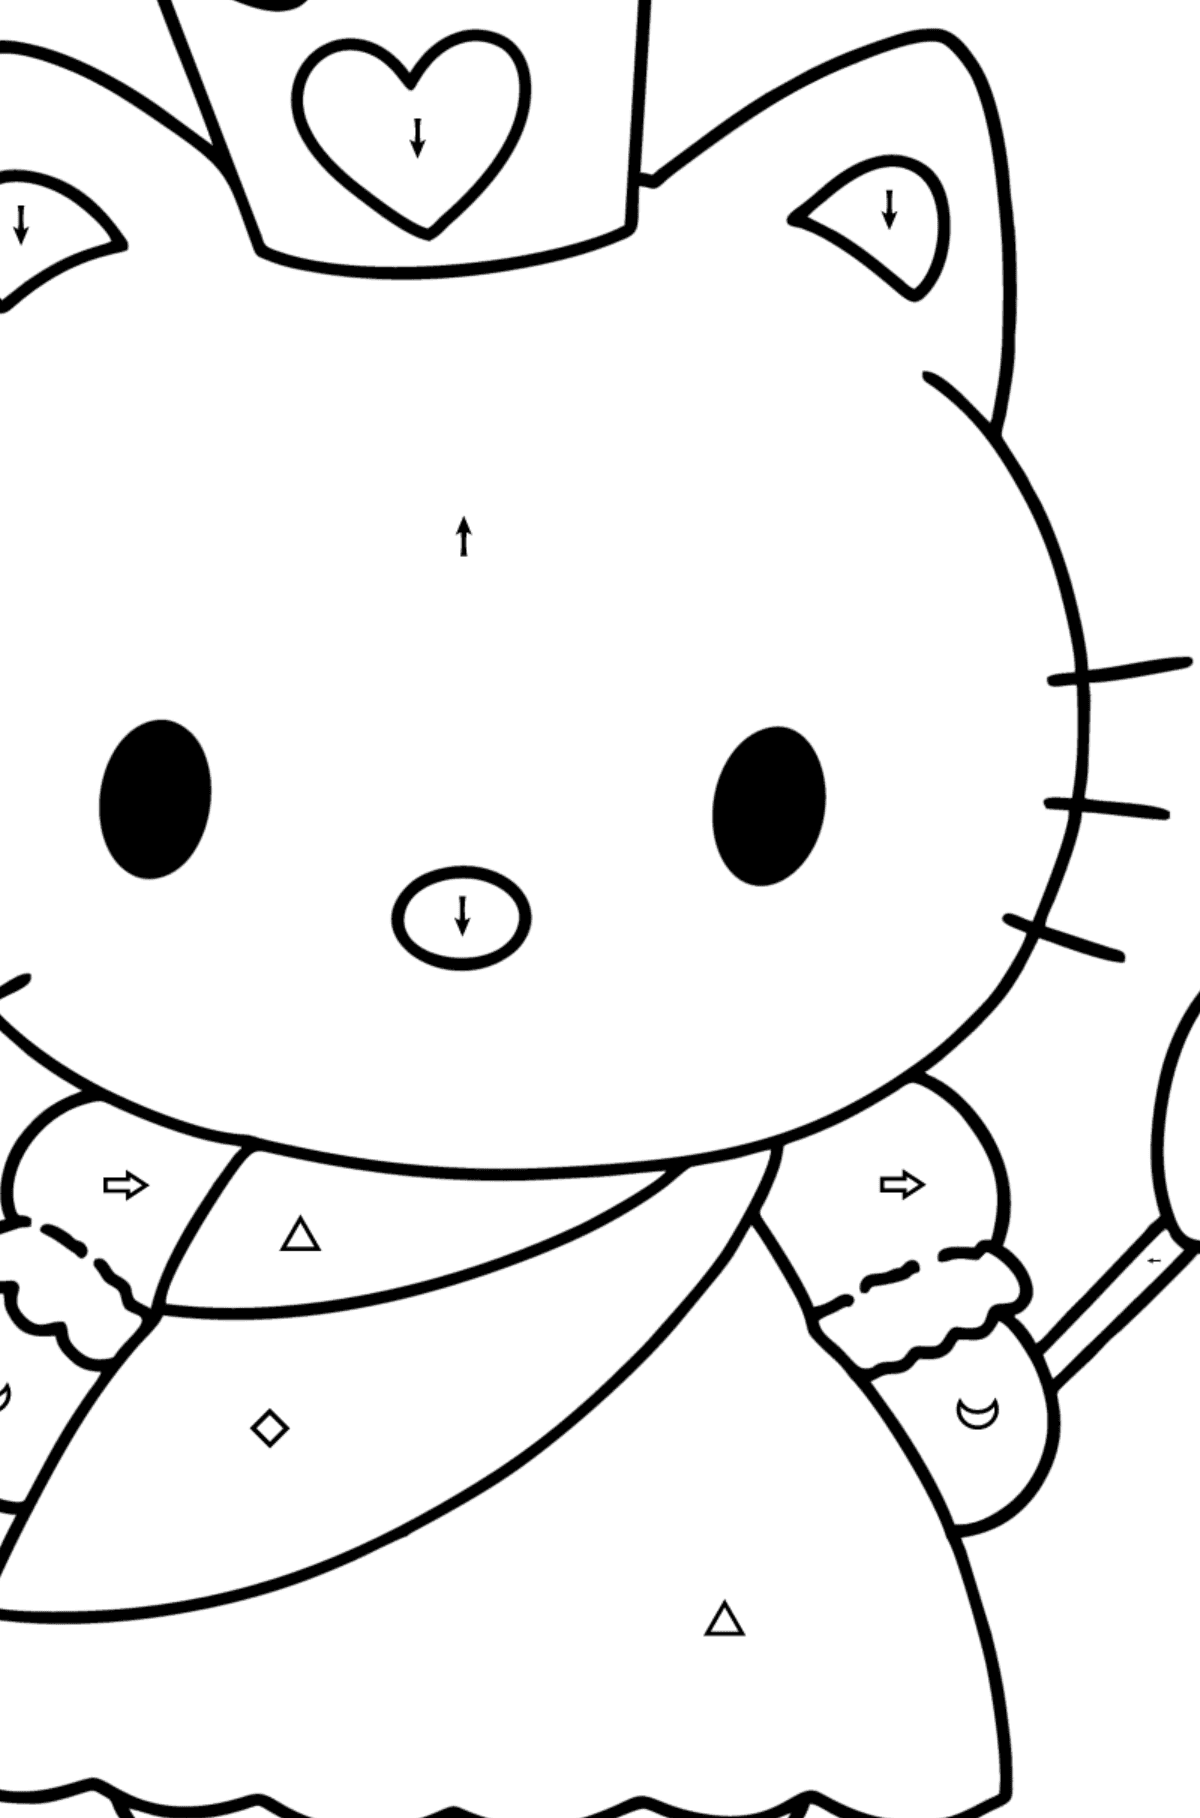 Boyama sayfası Hello Kitty bir prenses - Sembollere ve Geometrik Şekillerle Boyama çocuklar için